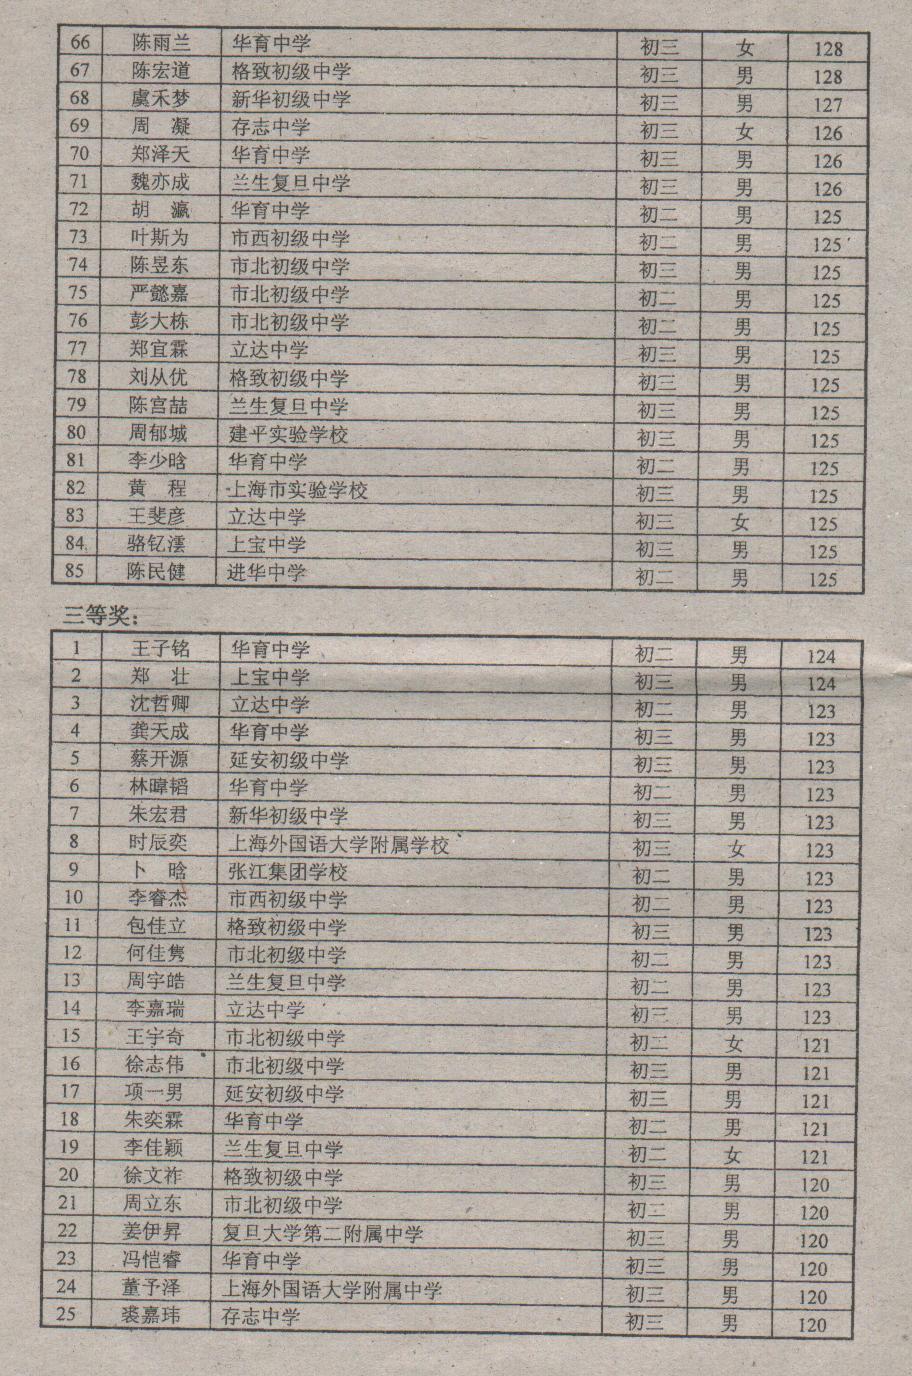 2010年全国初中数学竞赛（上海赛区）获奖名单 003.jpg